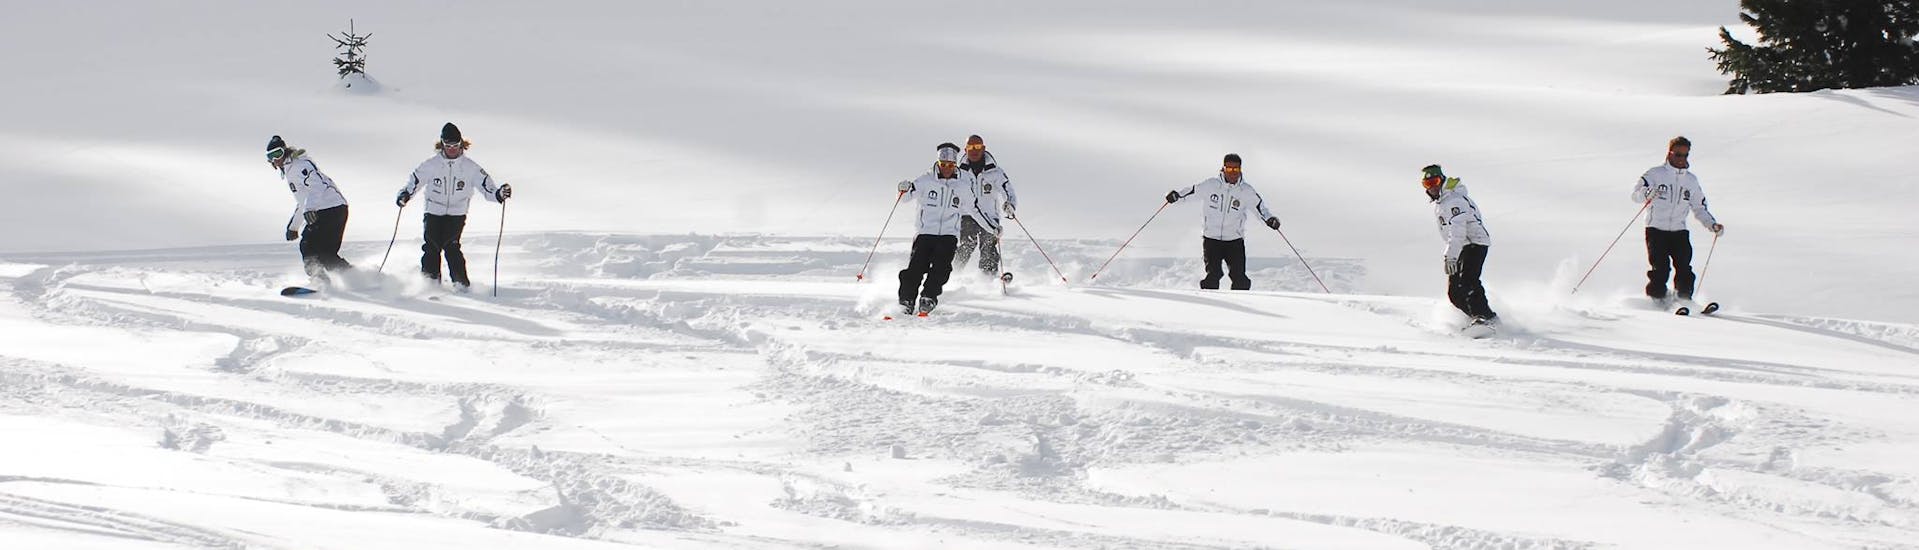 Privé skilessen voor volwassenen vanaf 4 jaar voor alle niveaus.